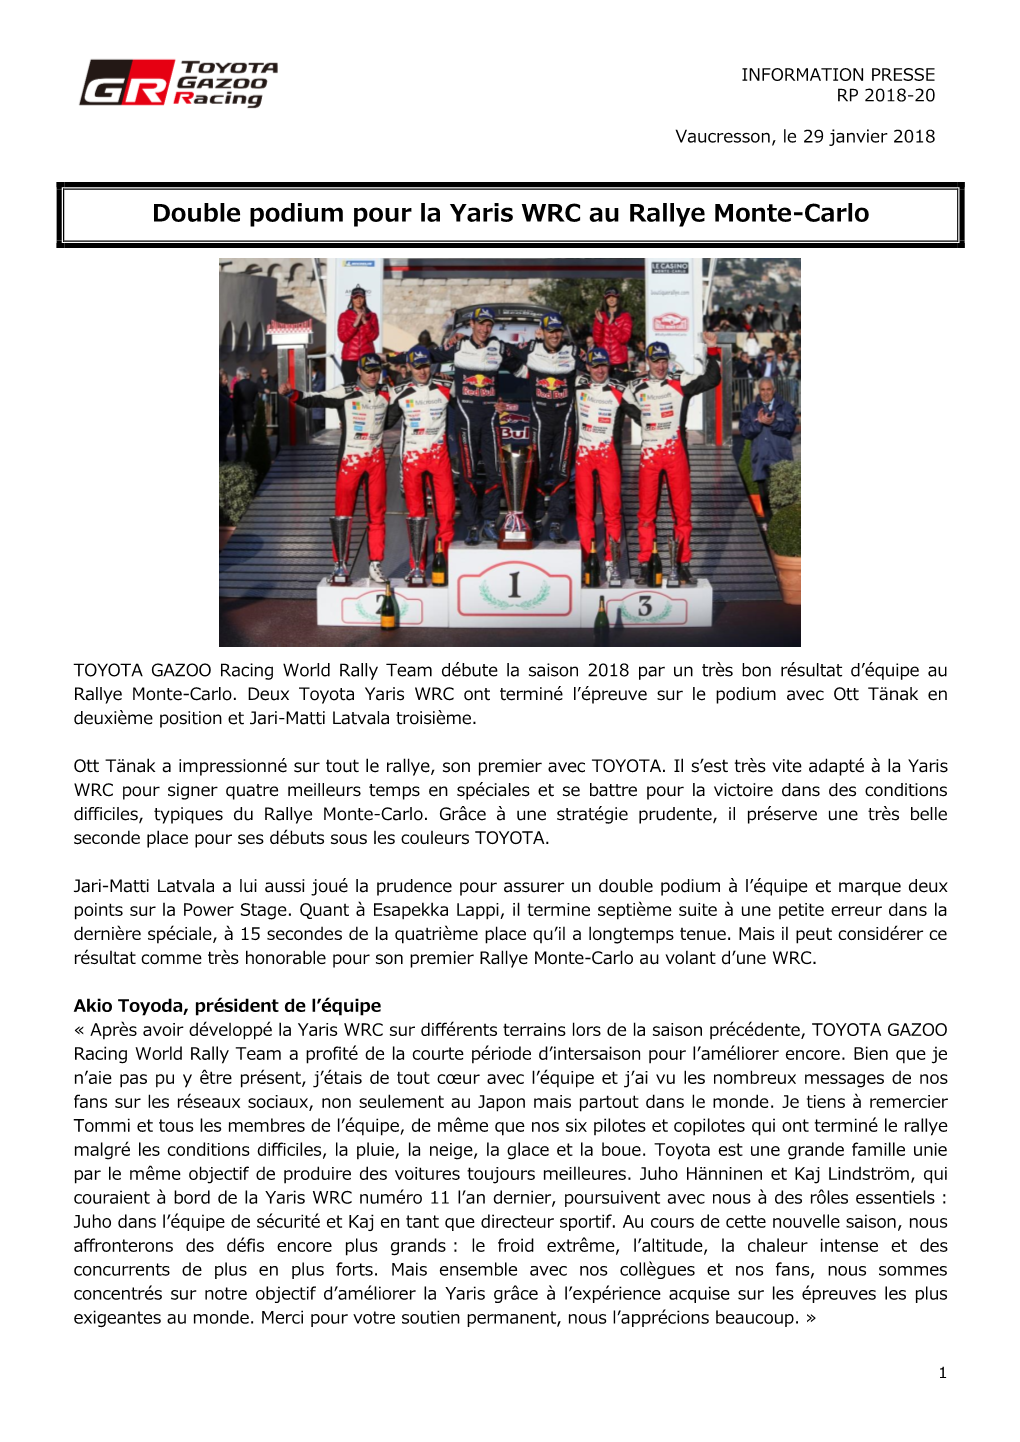 Double Podium Pour La Yaris WRC Au Rallye Monte-Carlo